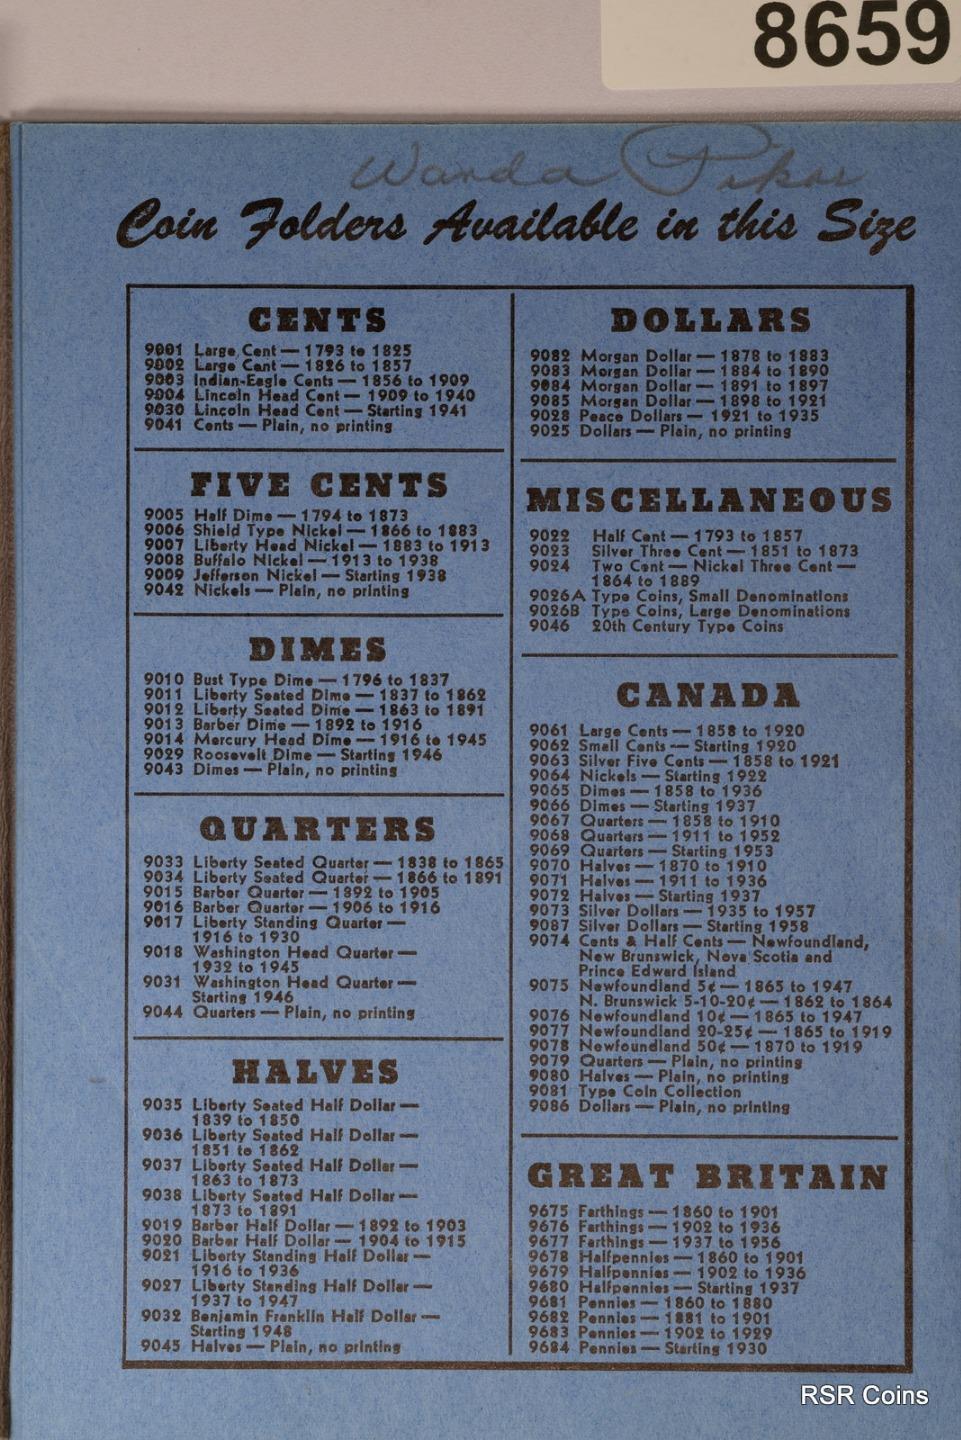 1916-1945 MERCURY DIME AG-VF+ 74 COIN LOT NO 16D, 21P&D 90% SILVER COINS #8659